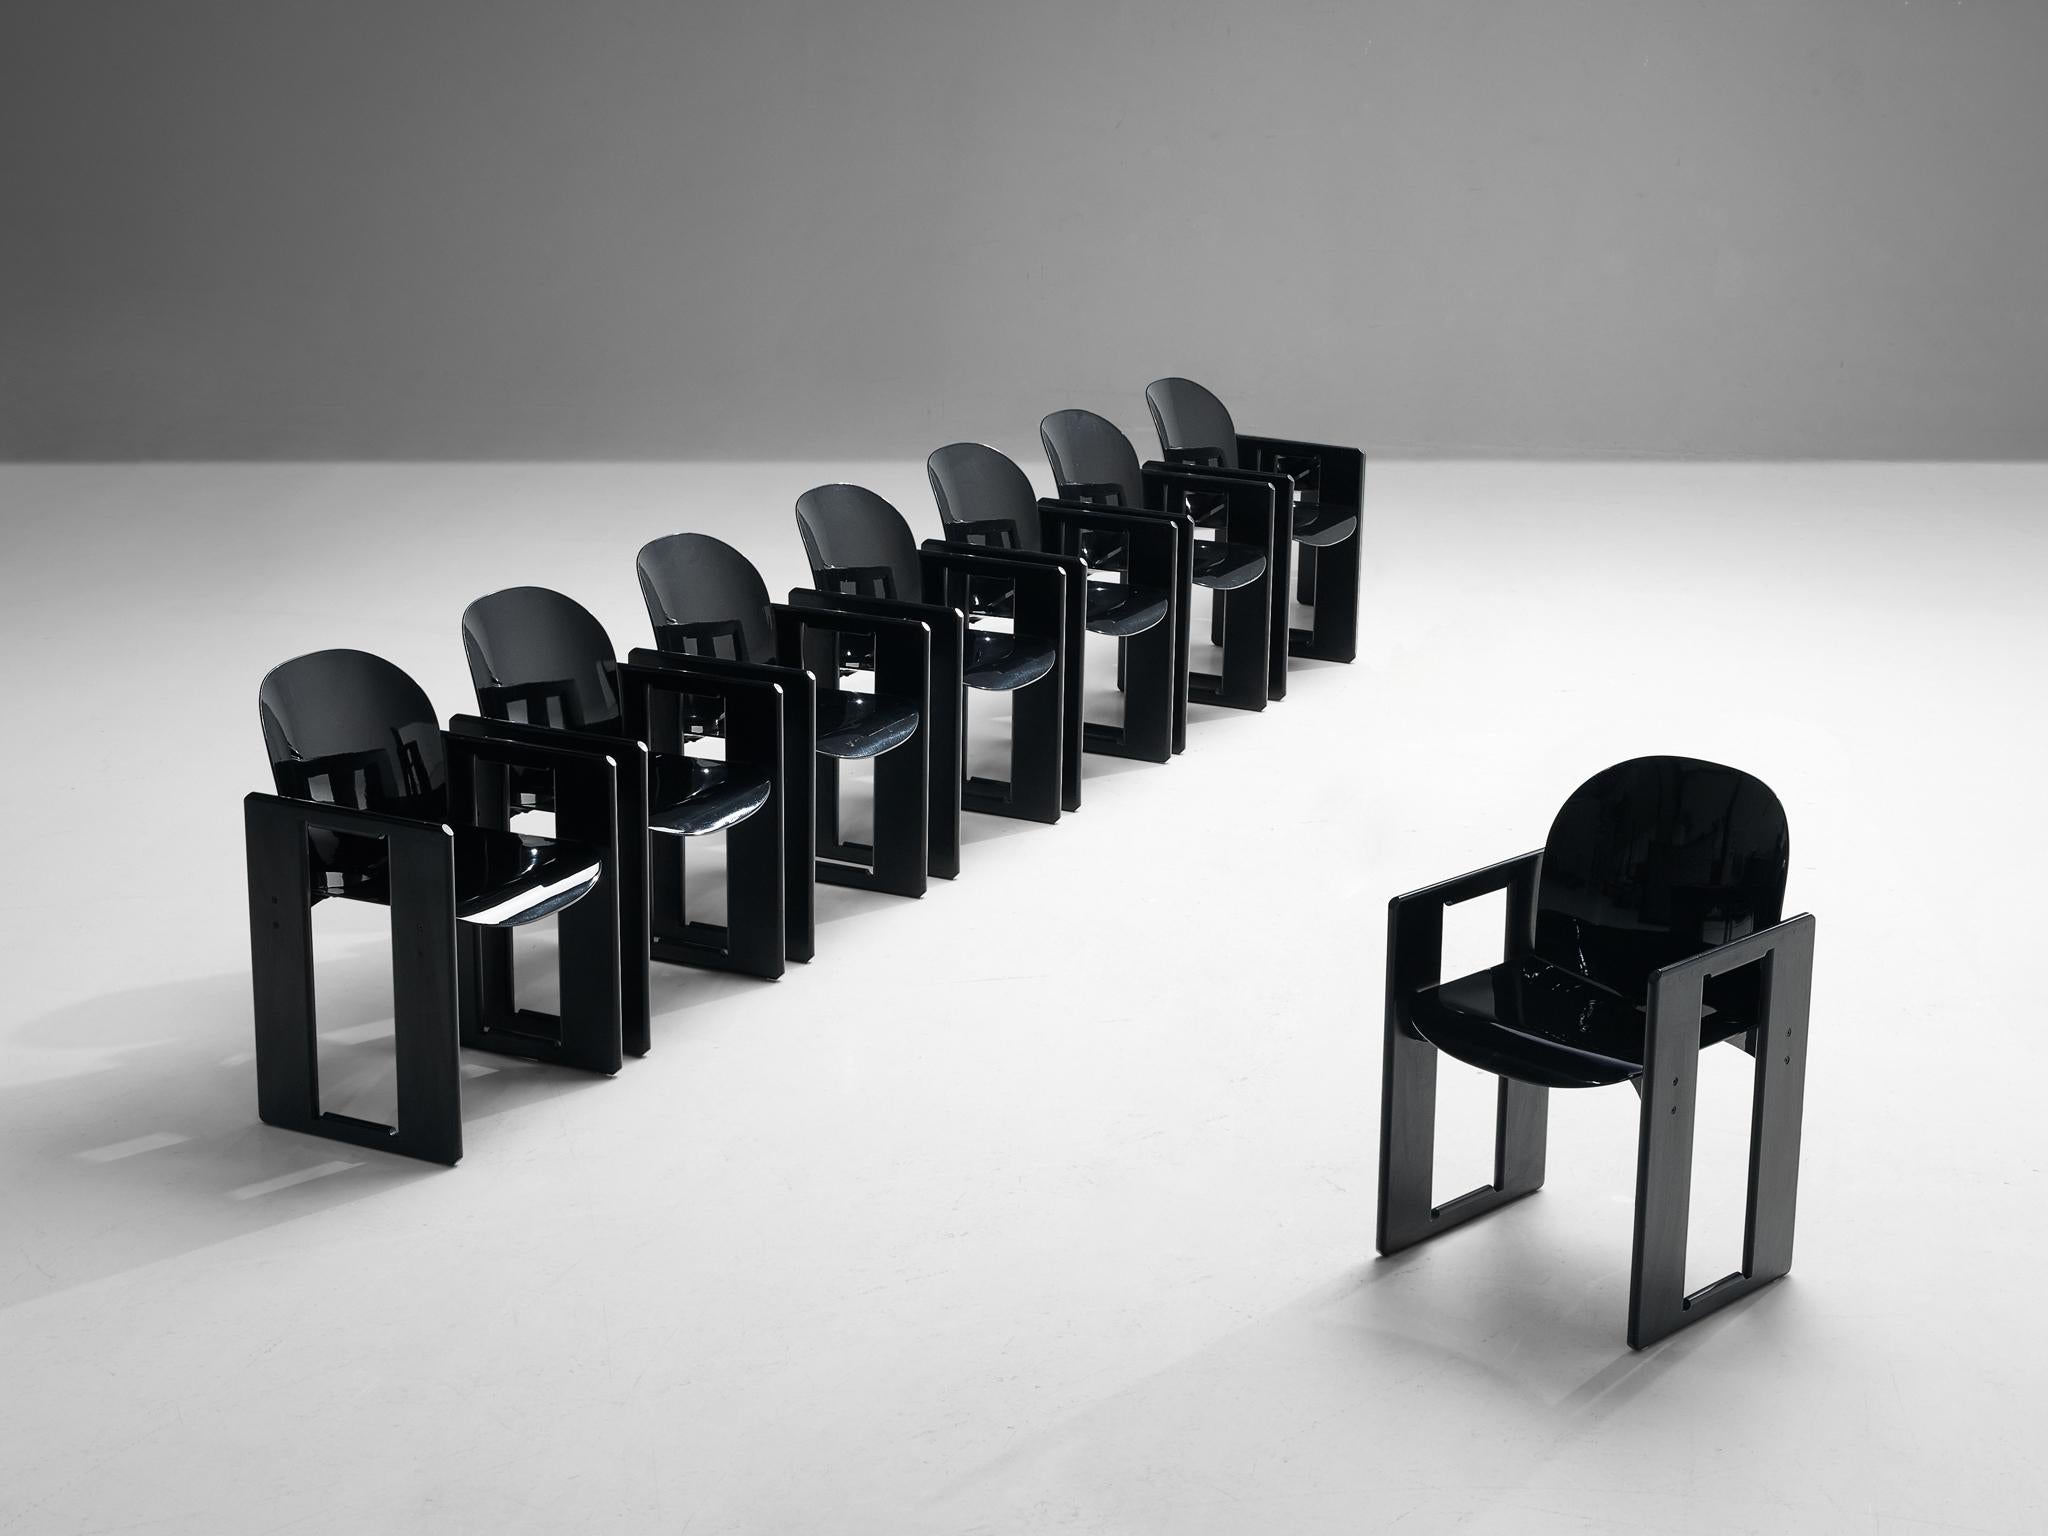 Afra und Tobia Scarpa für B&B Italia, Satz von acht 'Dialogo'-Esszimmerstühlen, schwarz lackiertes Holz, Fiberglas, Italien, 1970er Jahre
 
Der Esszimmerstuhl 'Dialogo' wurde von Afra und Tobia Scarpa in den 1970er Jahren entworfen und überzeugt